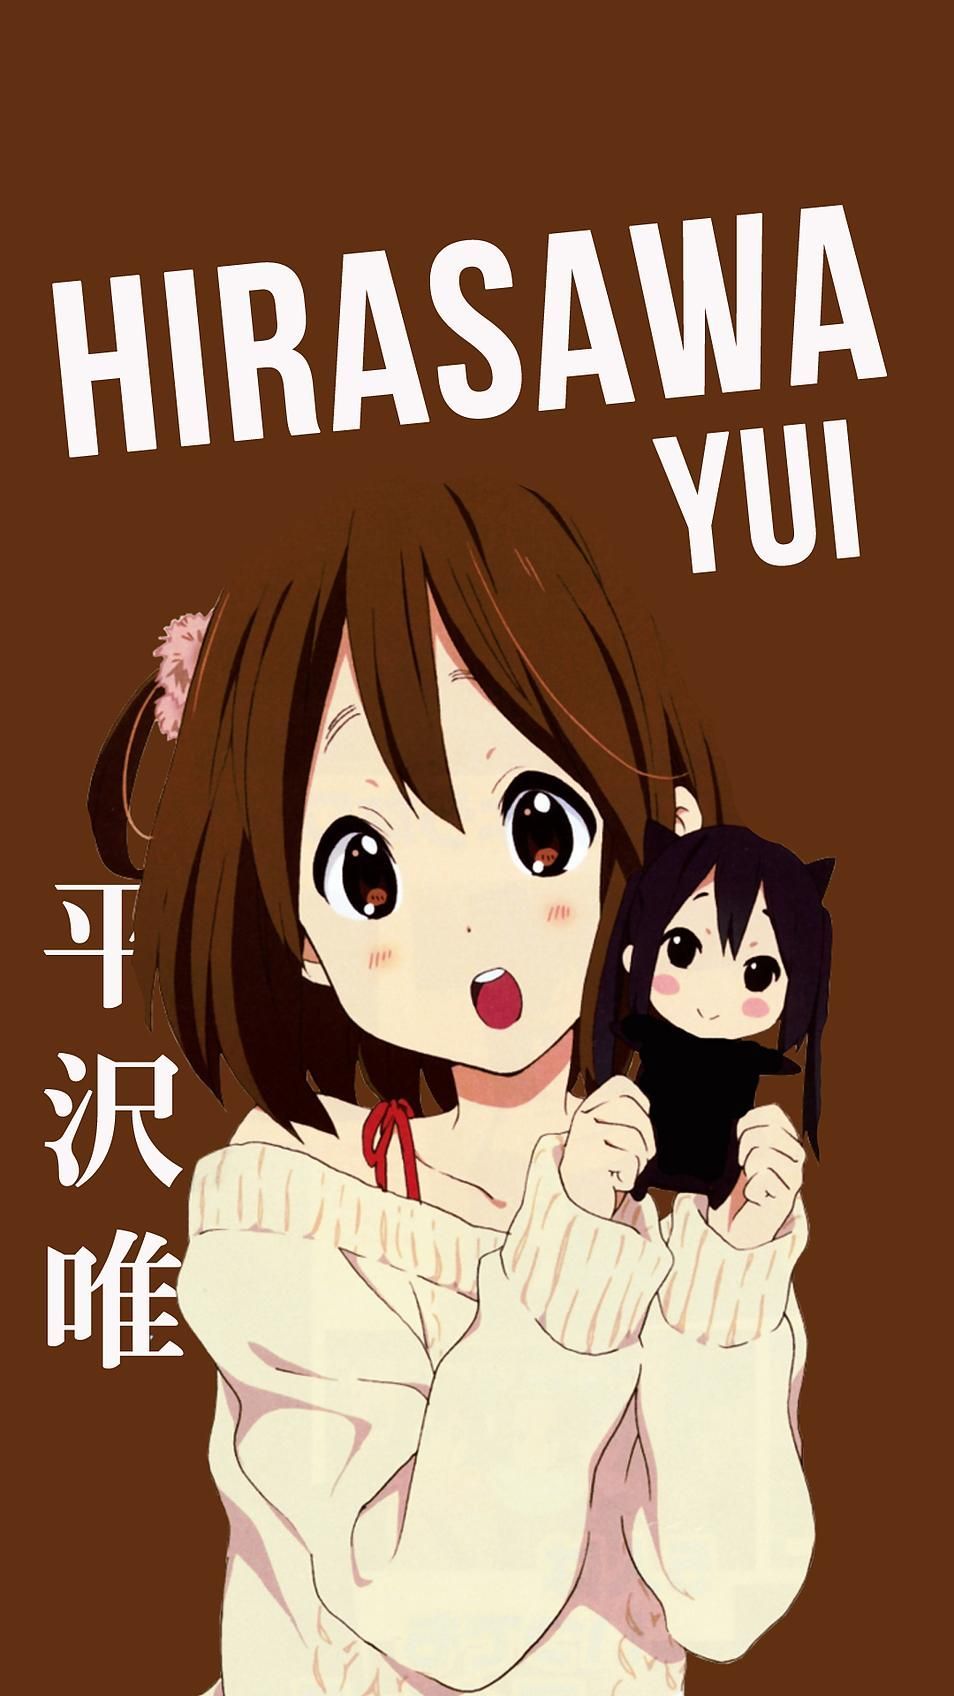 yui hirasawa pikachu